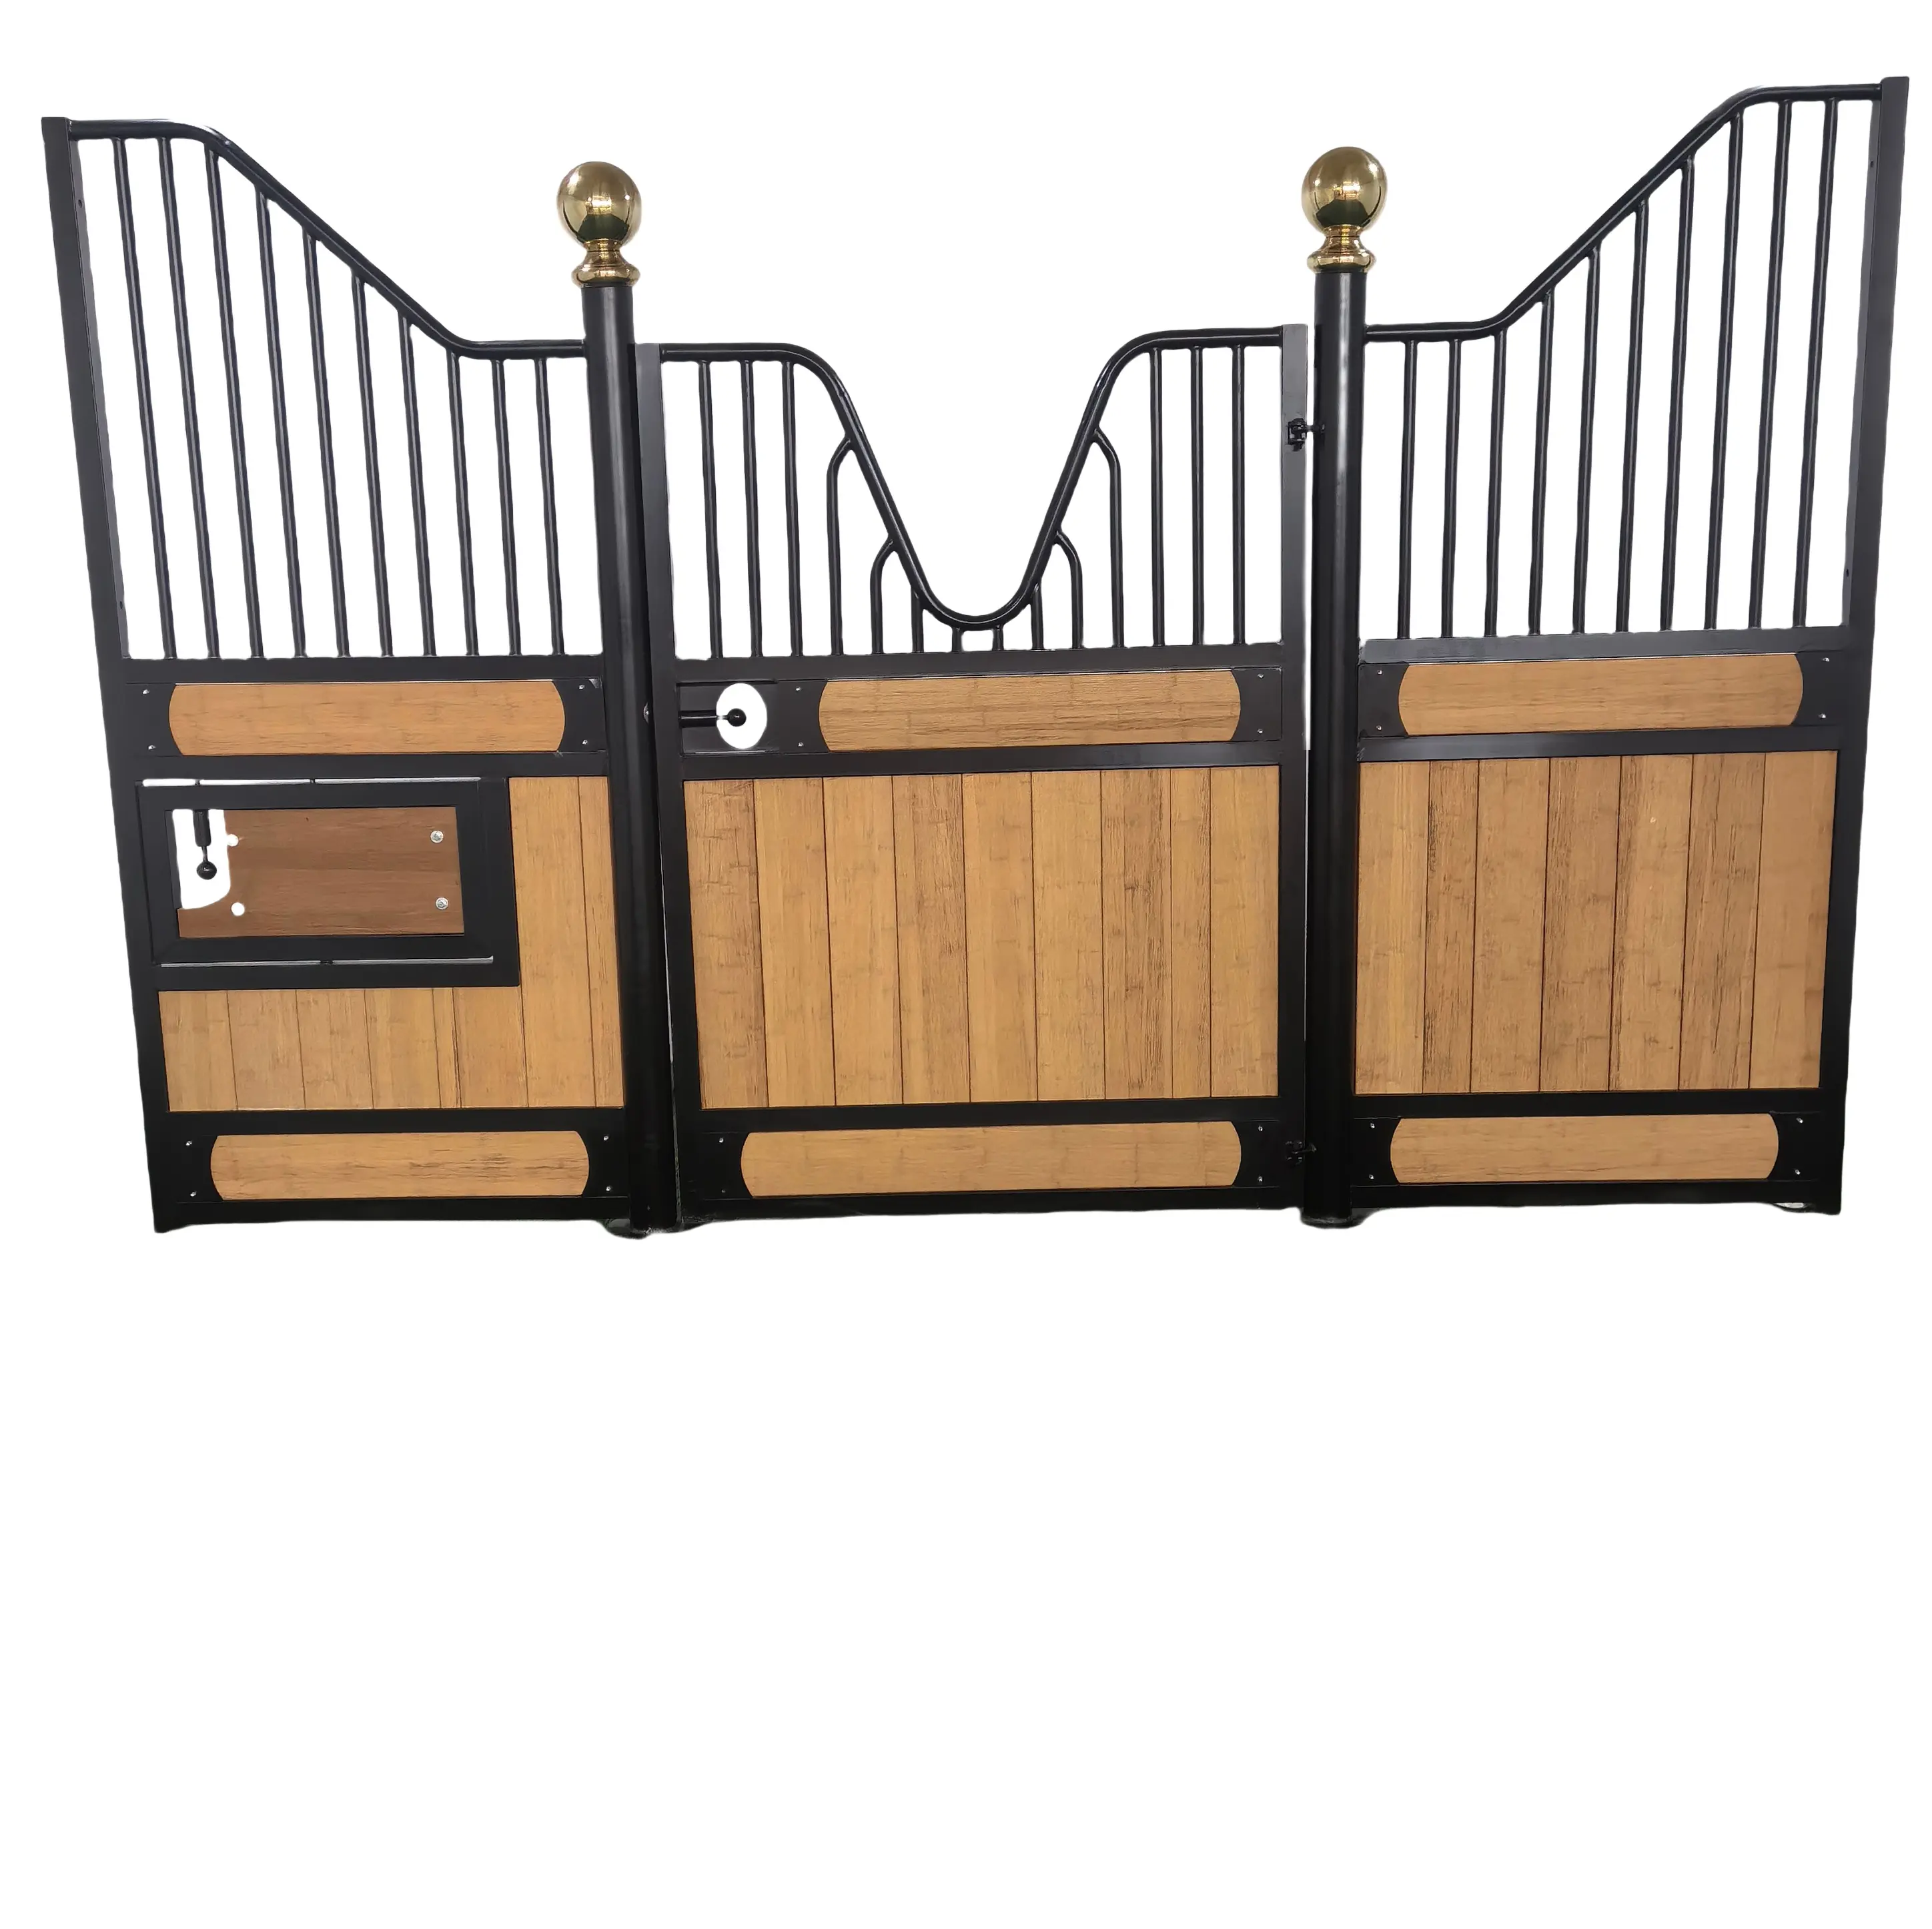 Equipo de caballos de bambú portátil Puertas Producto equino Caja de caballos al aire libre Paneles delanteros de caballos estables